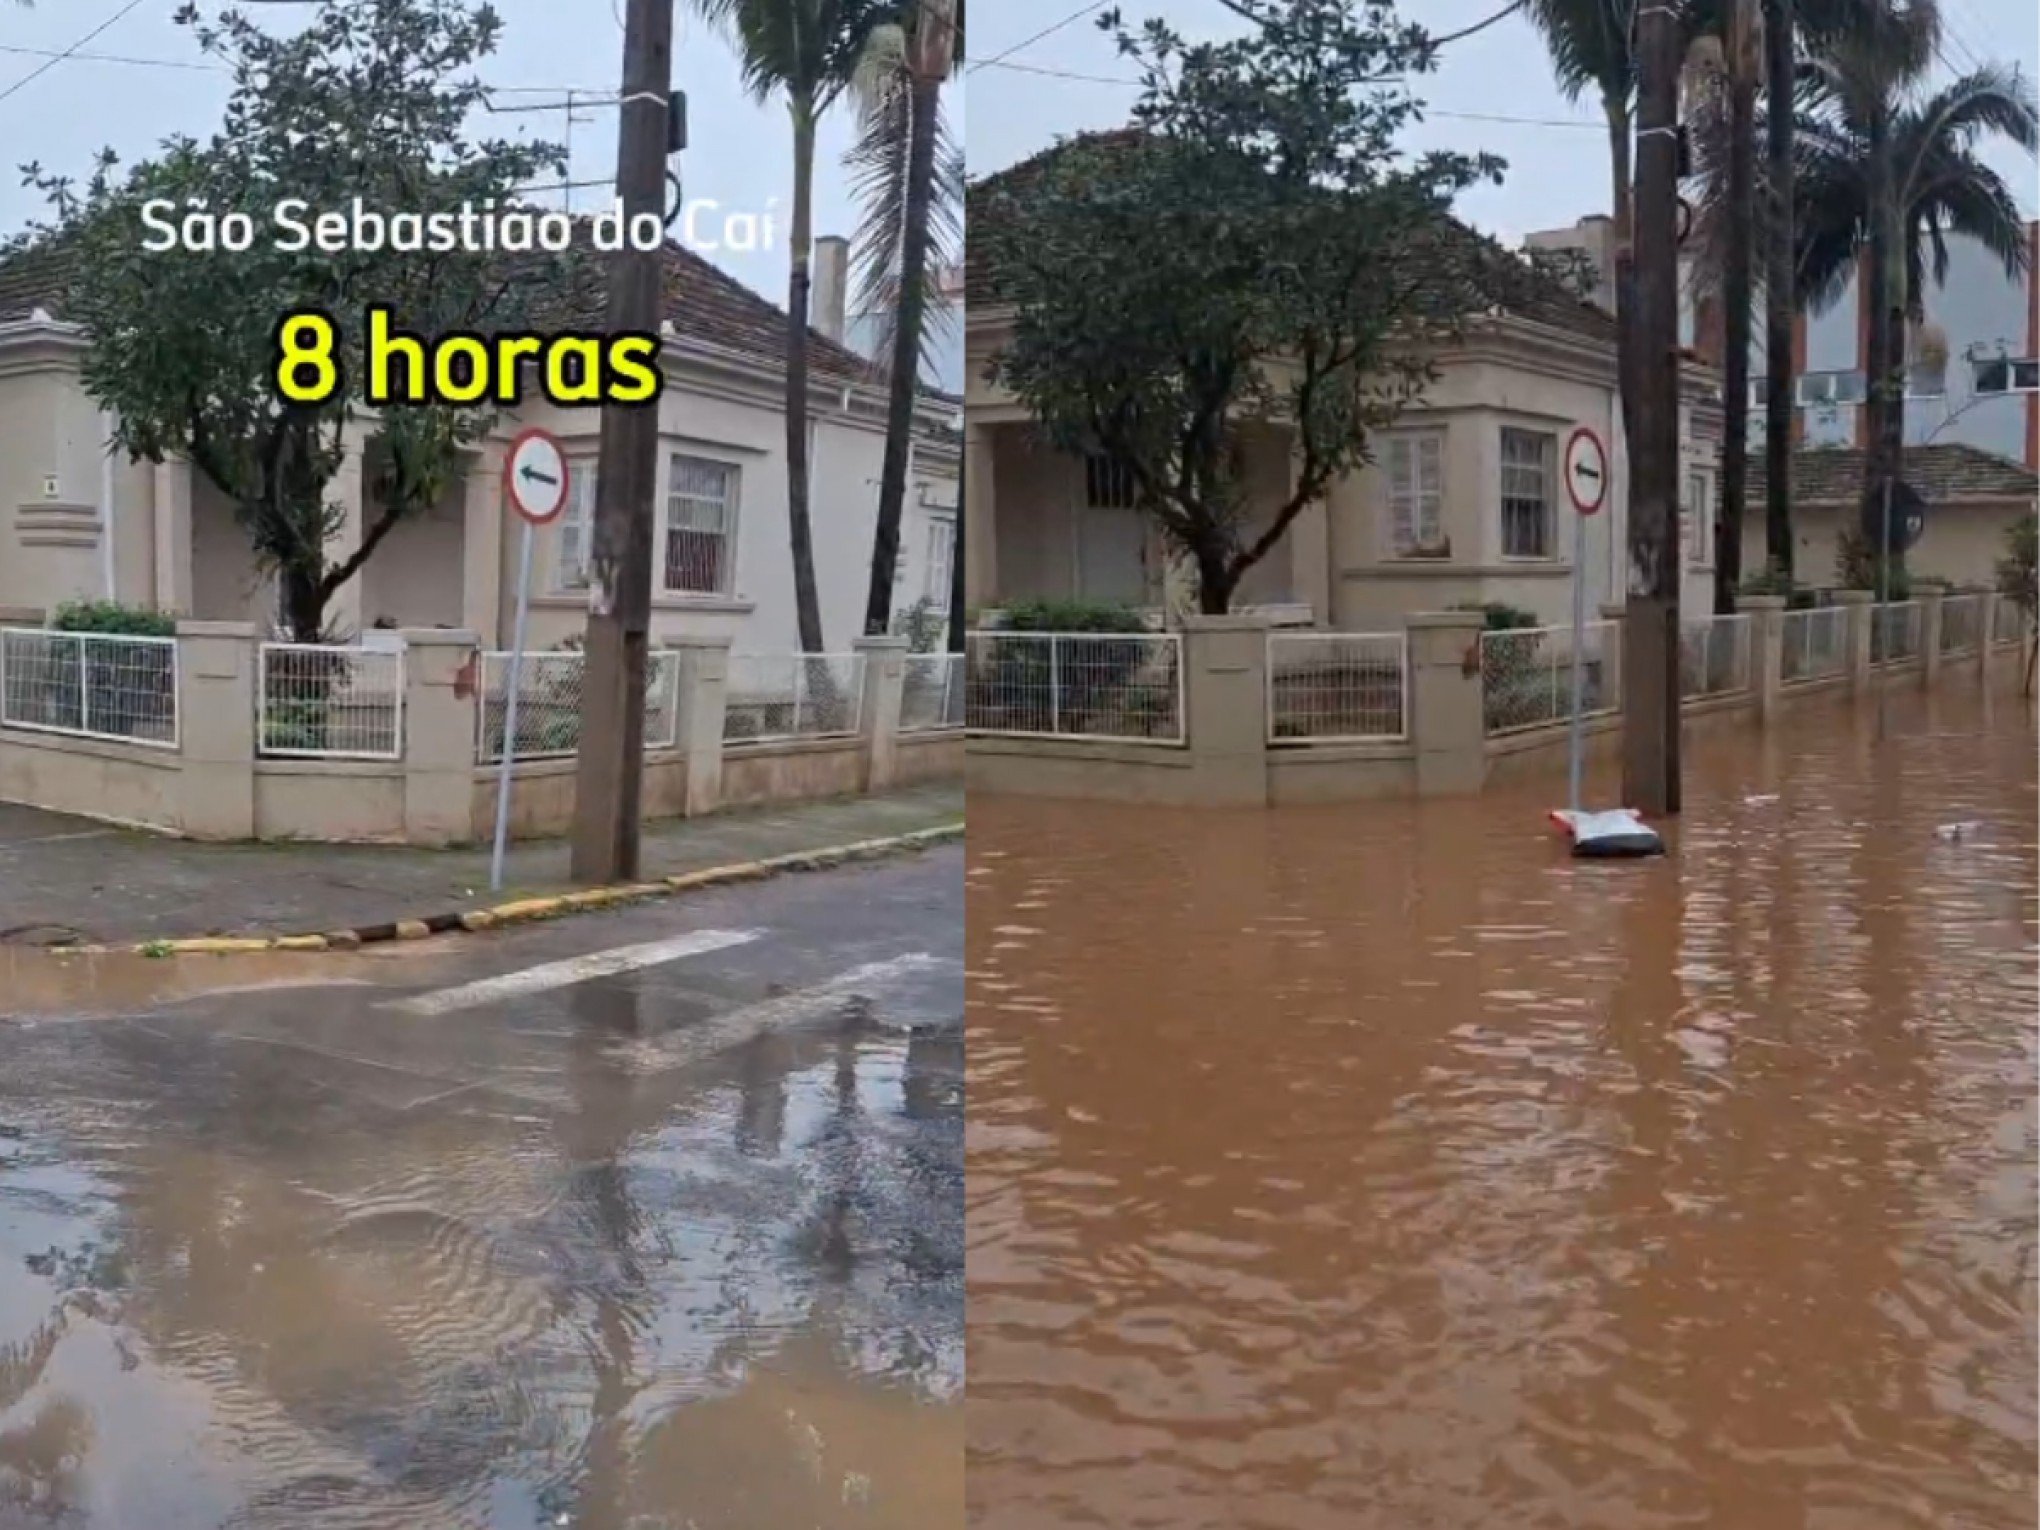 Vídeo mostra impressionante avanço da inundação nas ruas de São Sebastião do Caí